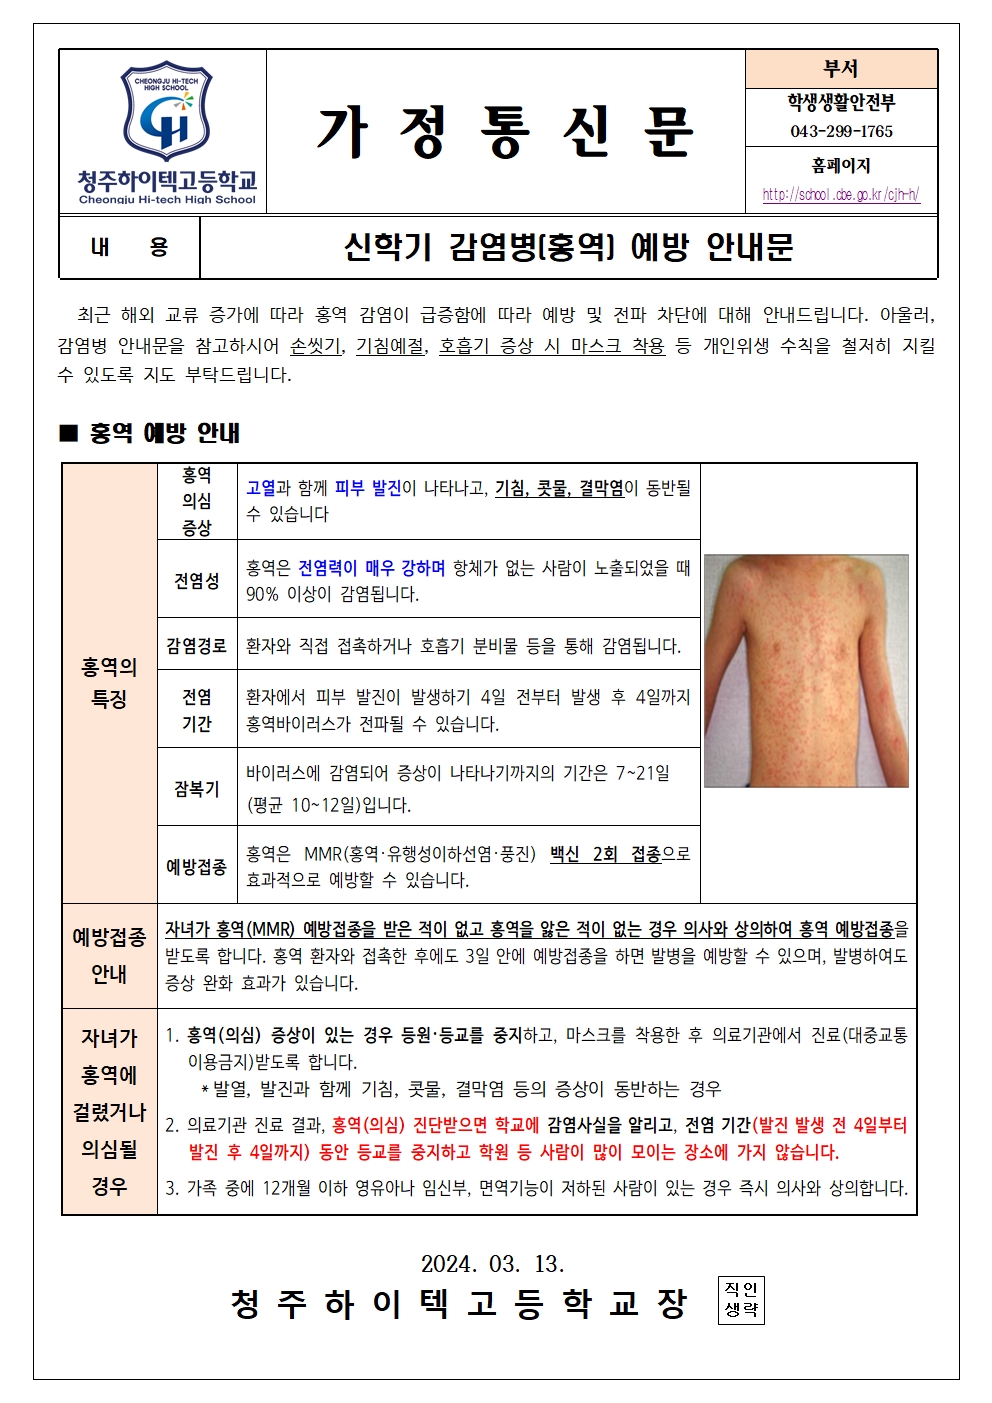 신학기 감염병(홍역) 예방 안내문001